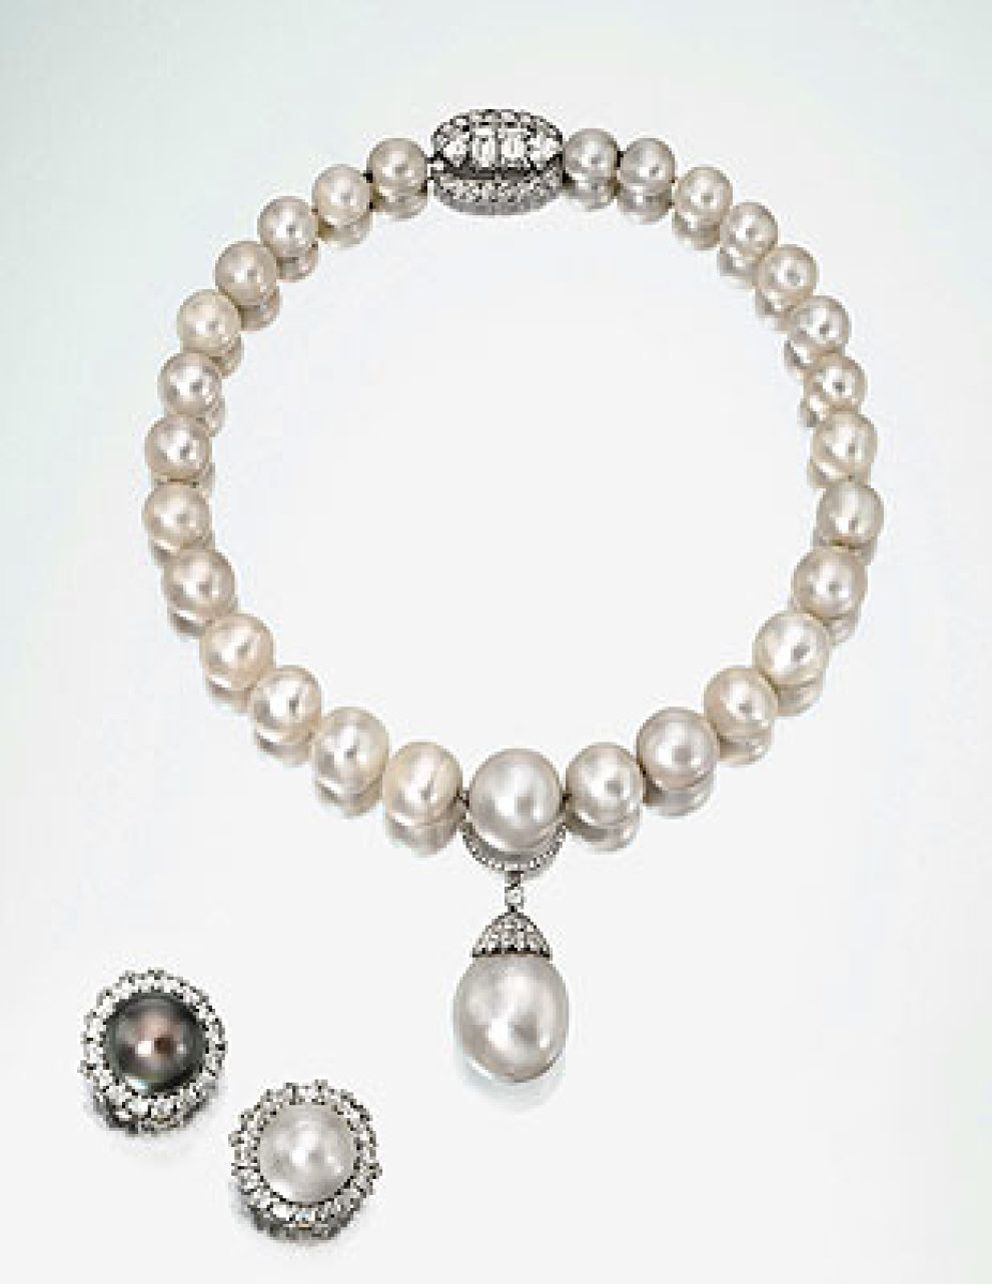 Foto: Las joyas de la duquesa de Windsor siguen batiendo records en las subastas